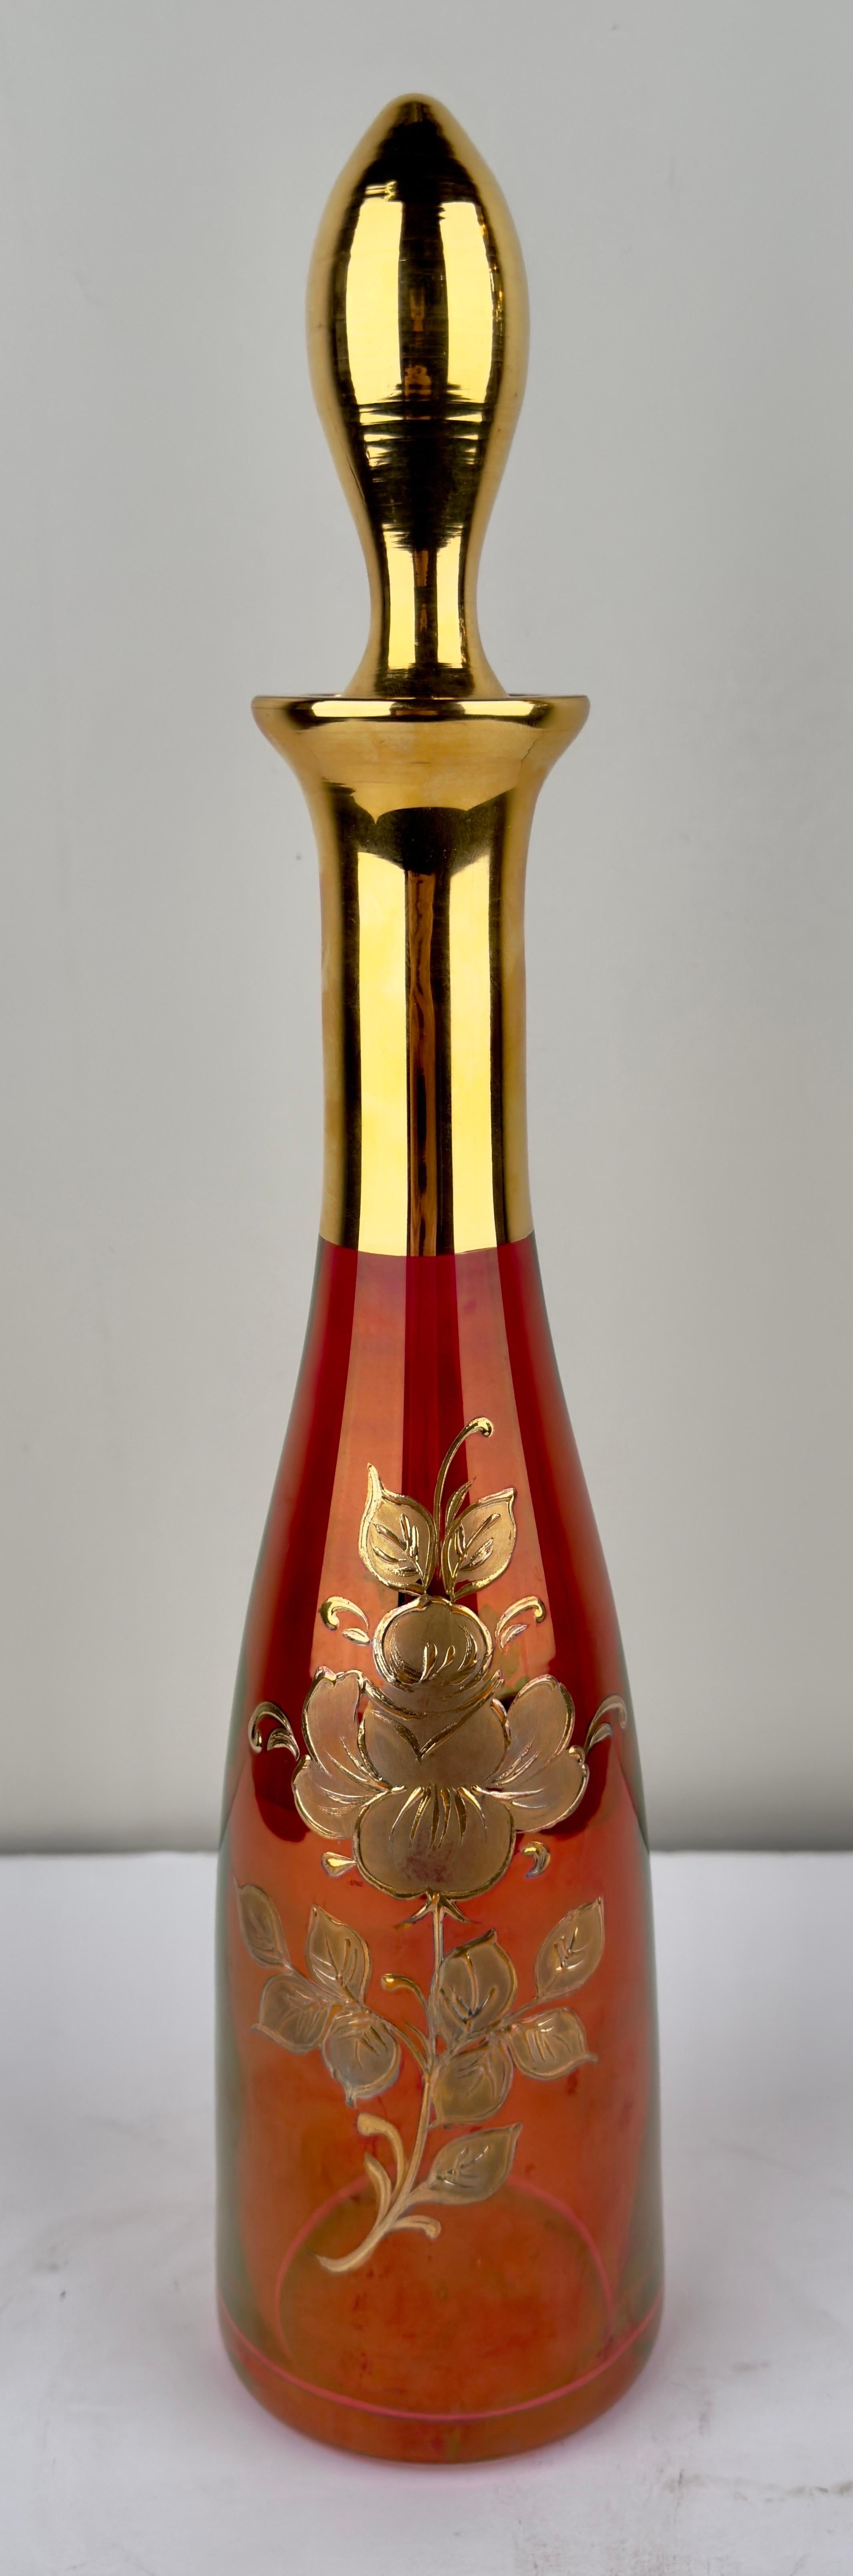 Ein exquisites österreichisches Jugendstilset aus den 1920er Jahren mit strahlenden Rubintönen, die von der Opulenz des 24-karätigen Goldes geküsst werden. 
Die Weingläser sind mit komplizierten floralen Ätzungen verziert, die über die Oberfläche